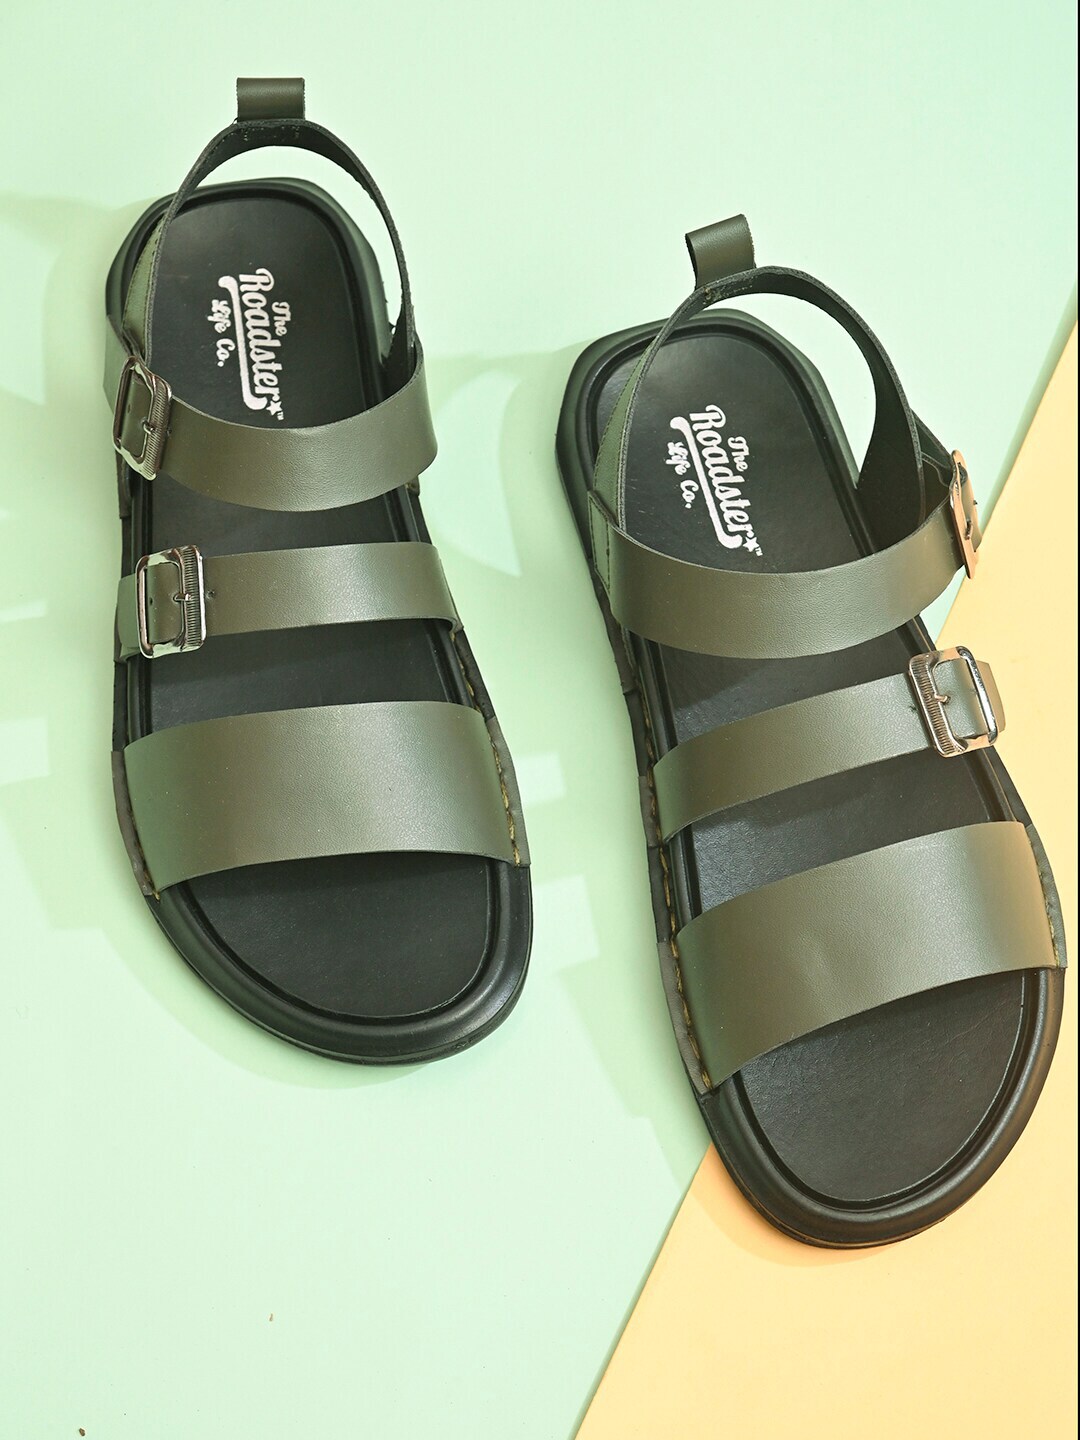 Roadster Men Black Sandals - Buy Roadster Men Black Sandals Online at Best  Price - Shop Online for Footwears in India | Flipkart.com